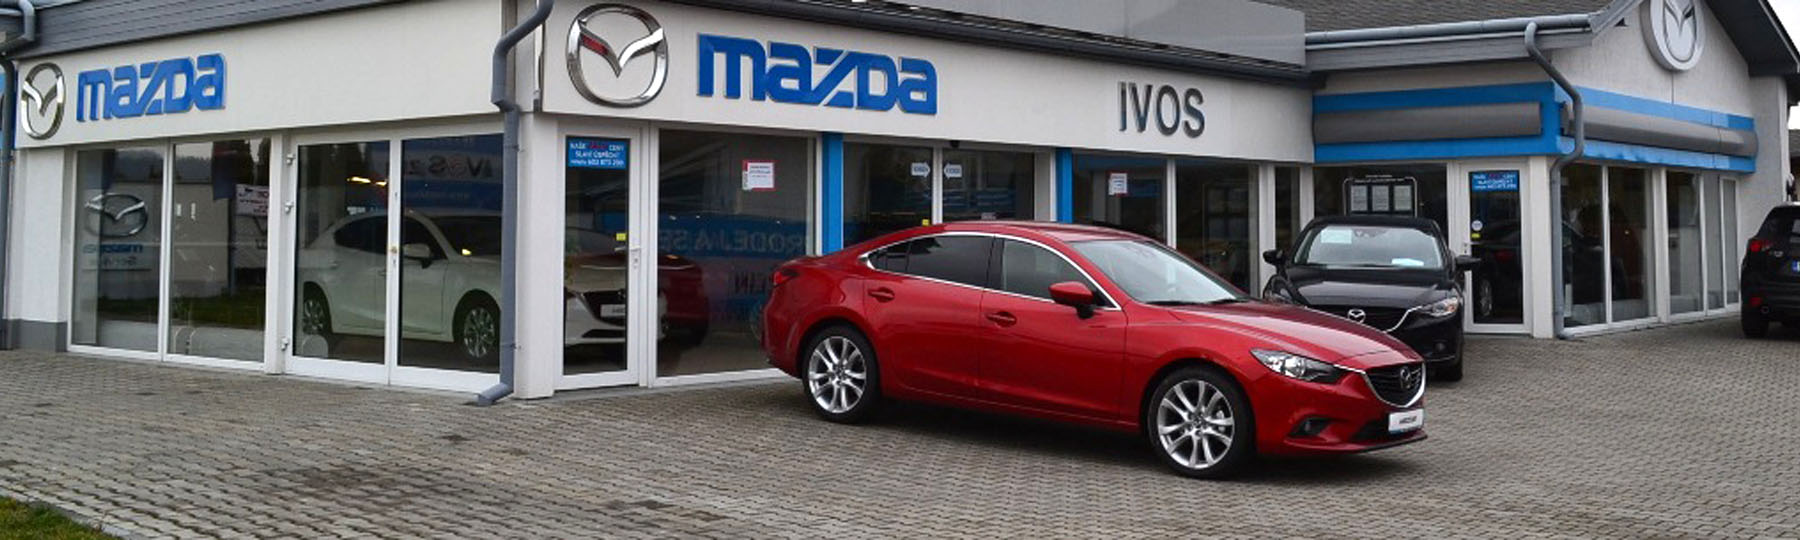 Nová Mazda 6 a Mazda 3 Hatchback Zlín